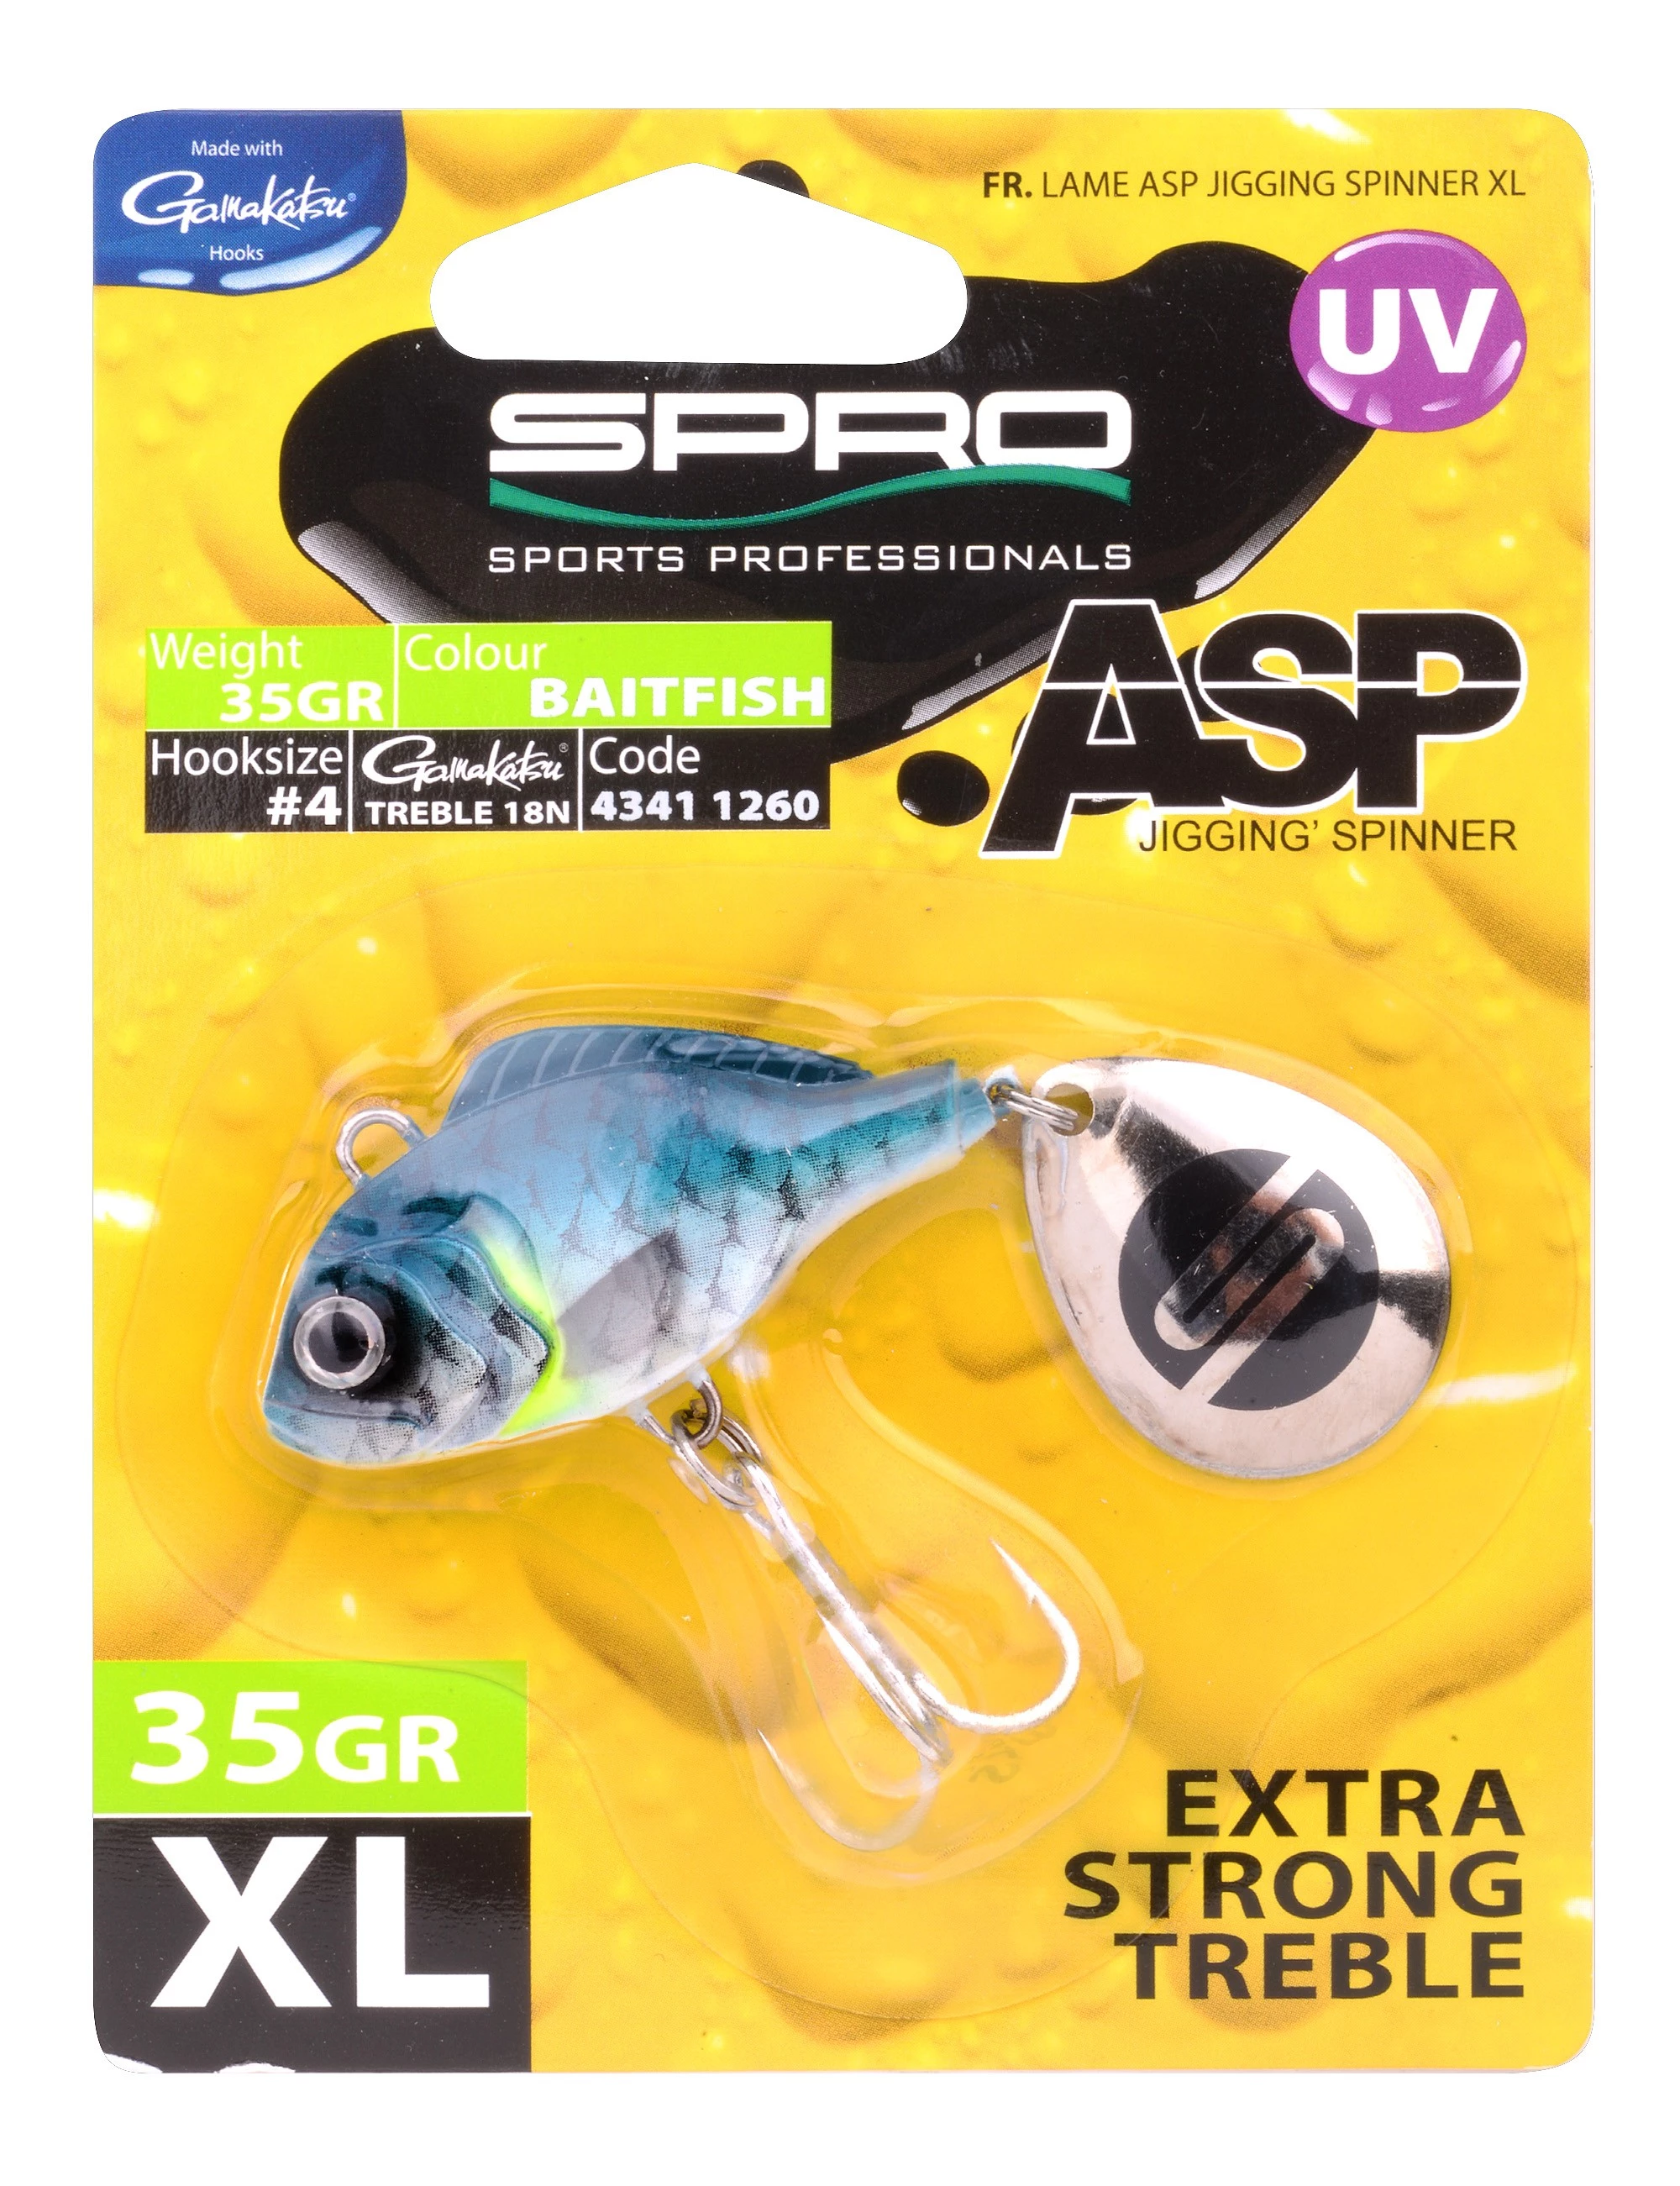 Spro ASP Jiggin Spinner UV XL 35g Baitfish